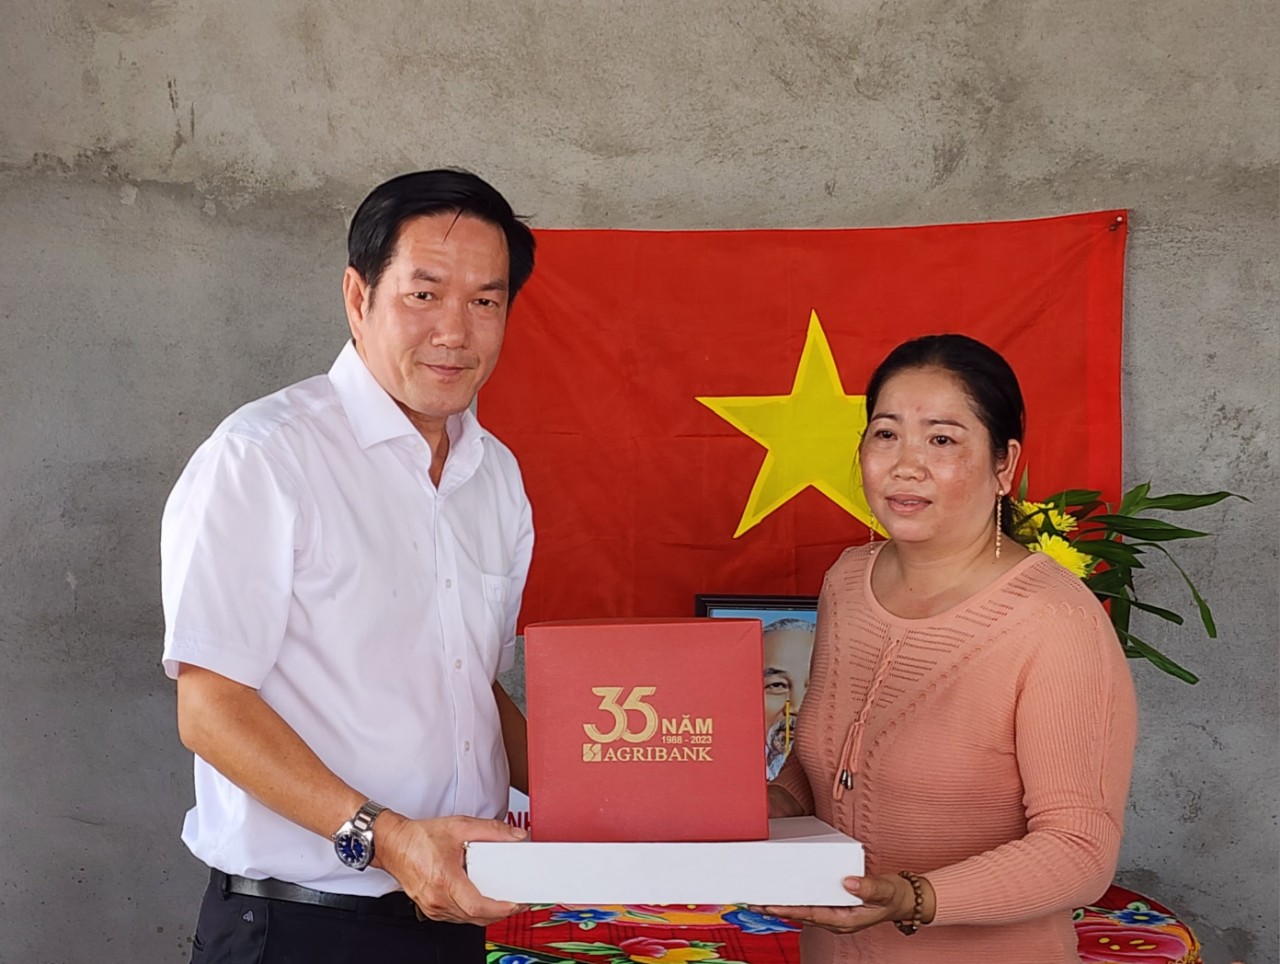 Agribank Tiền Giang bàn giao 3 căn nhà đại đoàn kết chào mừng 15 năm thành lập huyện Tân Phú Đông  - Ảnh 2.